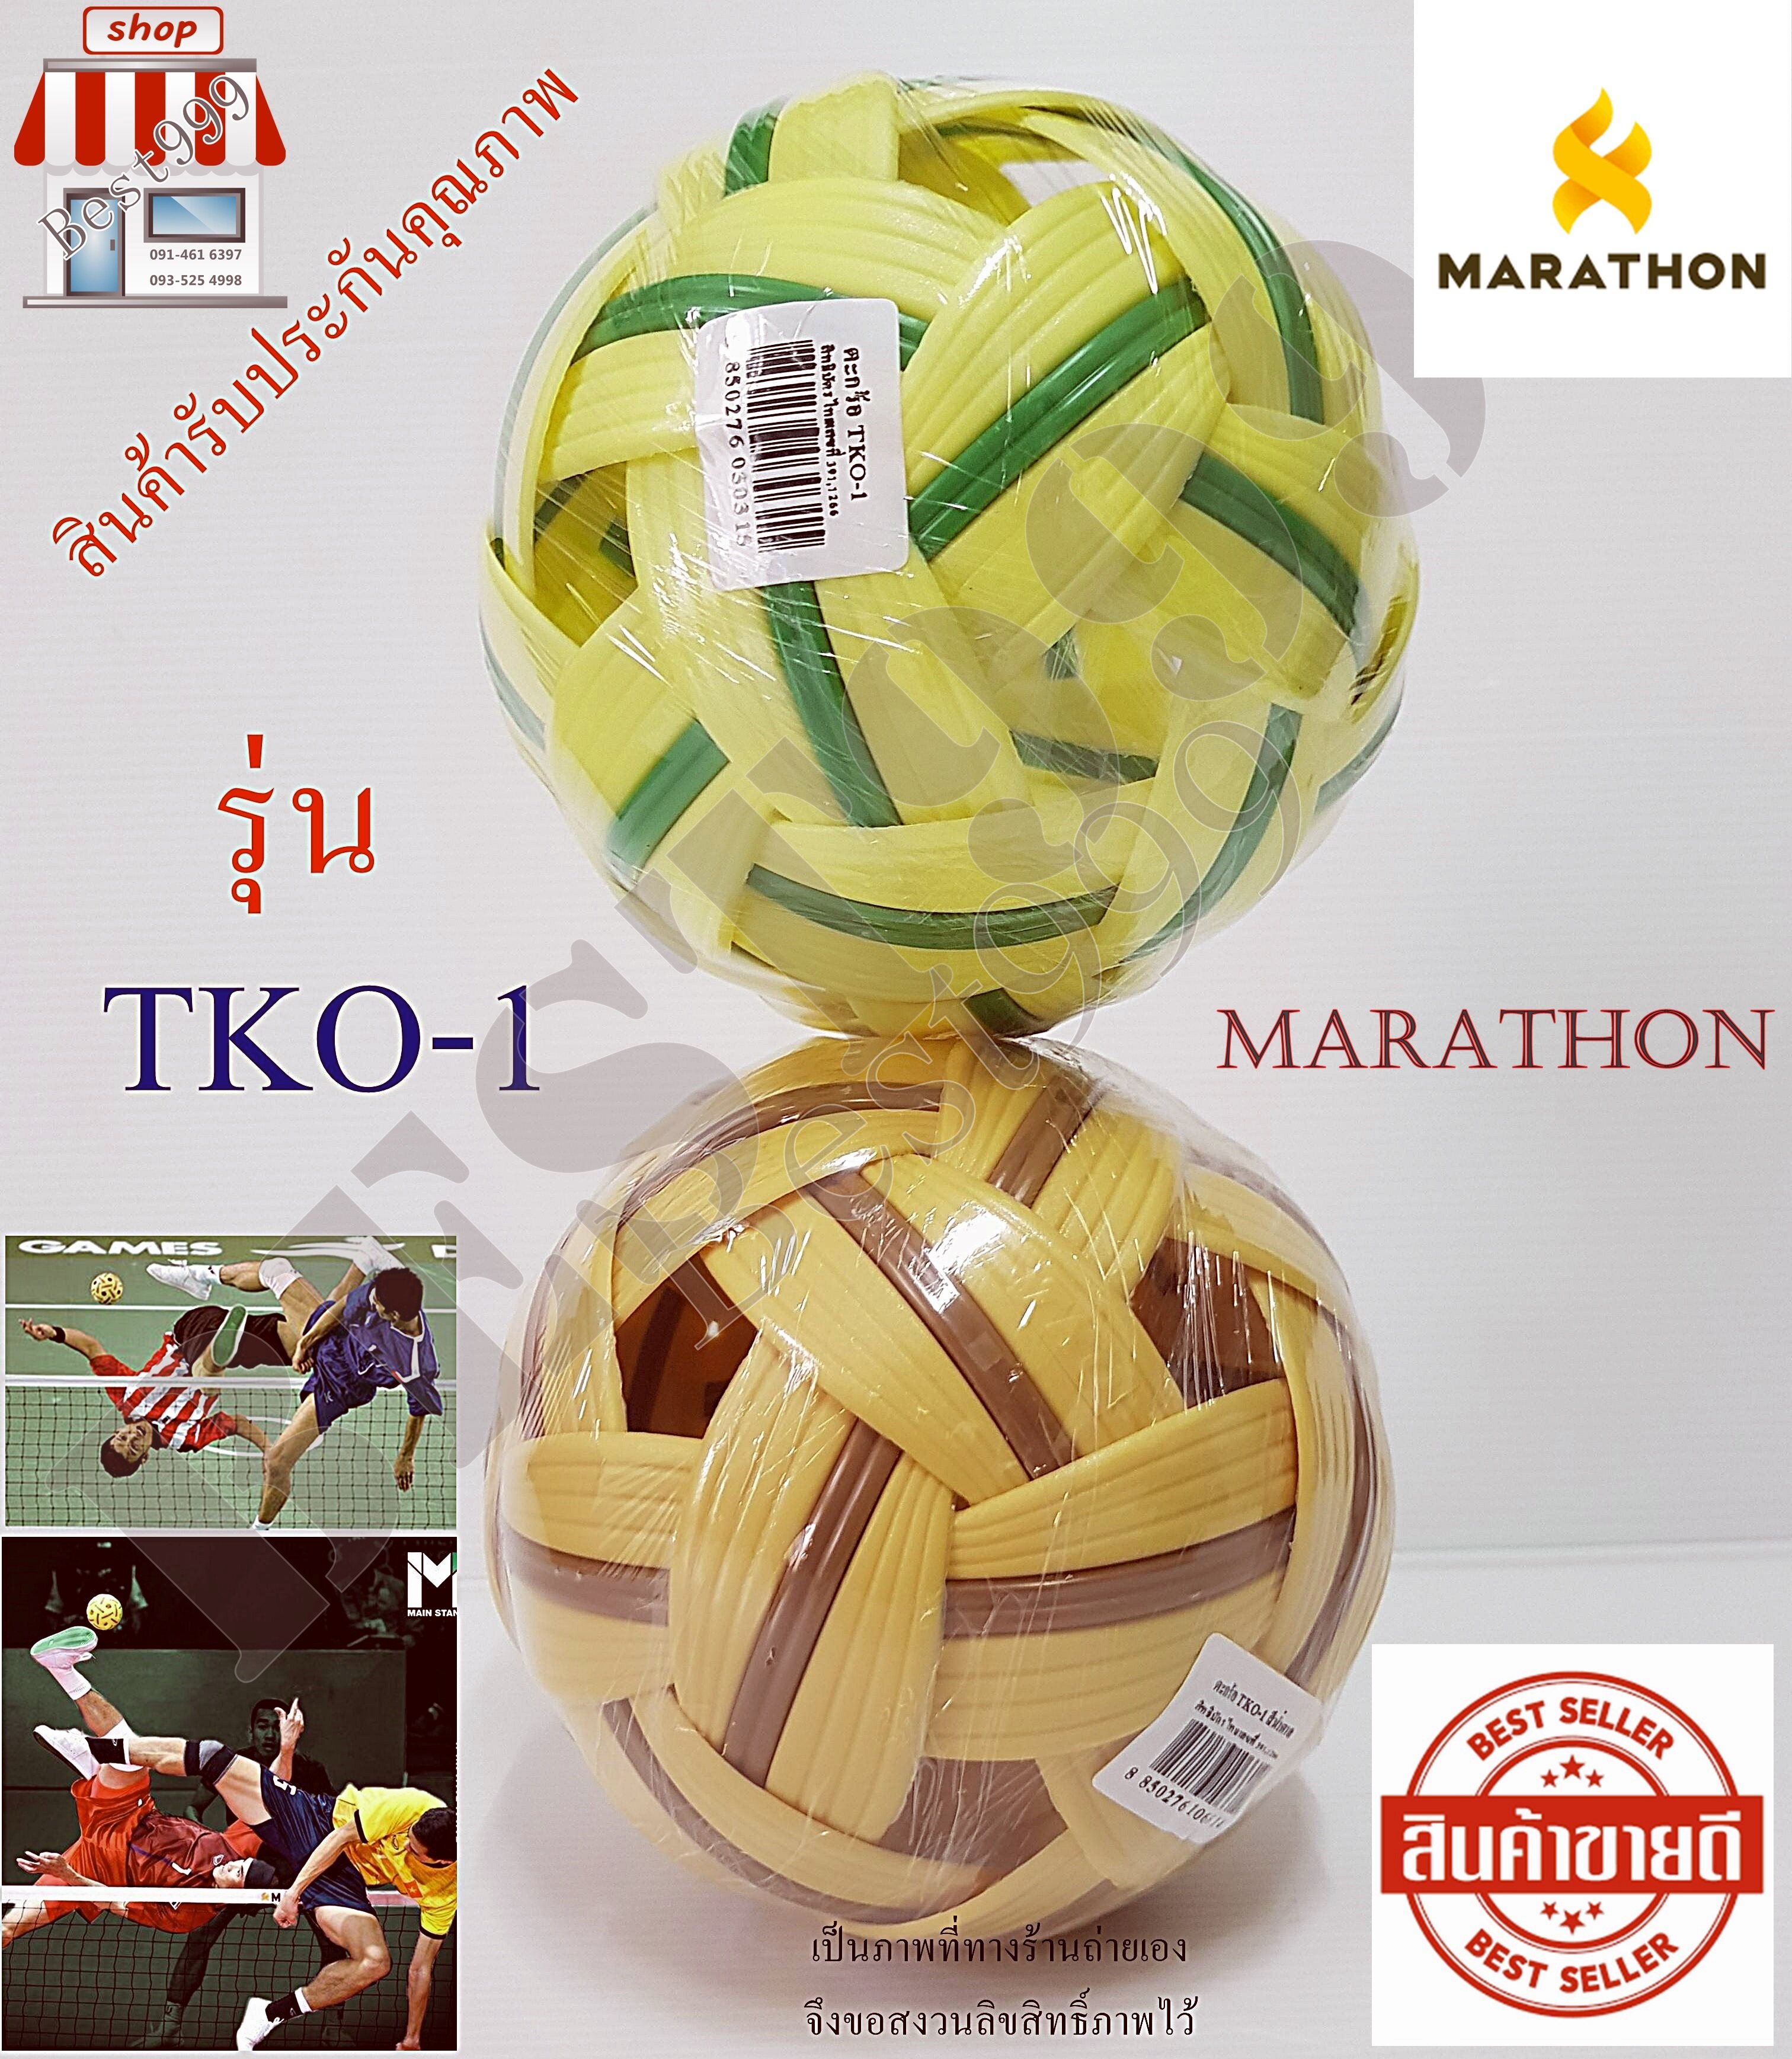 รูปภาพเพิ่มเติมของ Ball m marathon model TKO-1 sepak takraw ball marathon takraw Sepak takraw ball for sports accessories sports